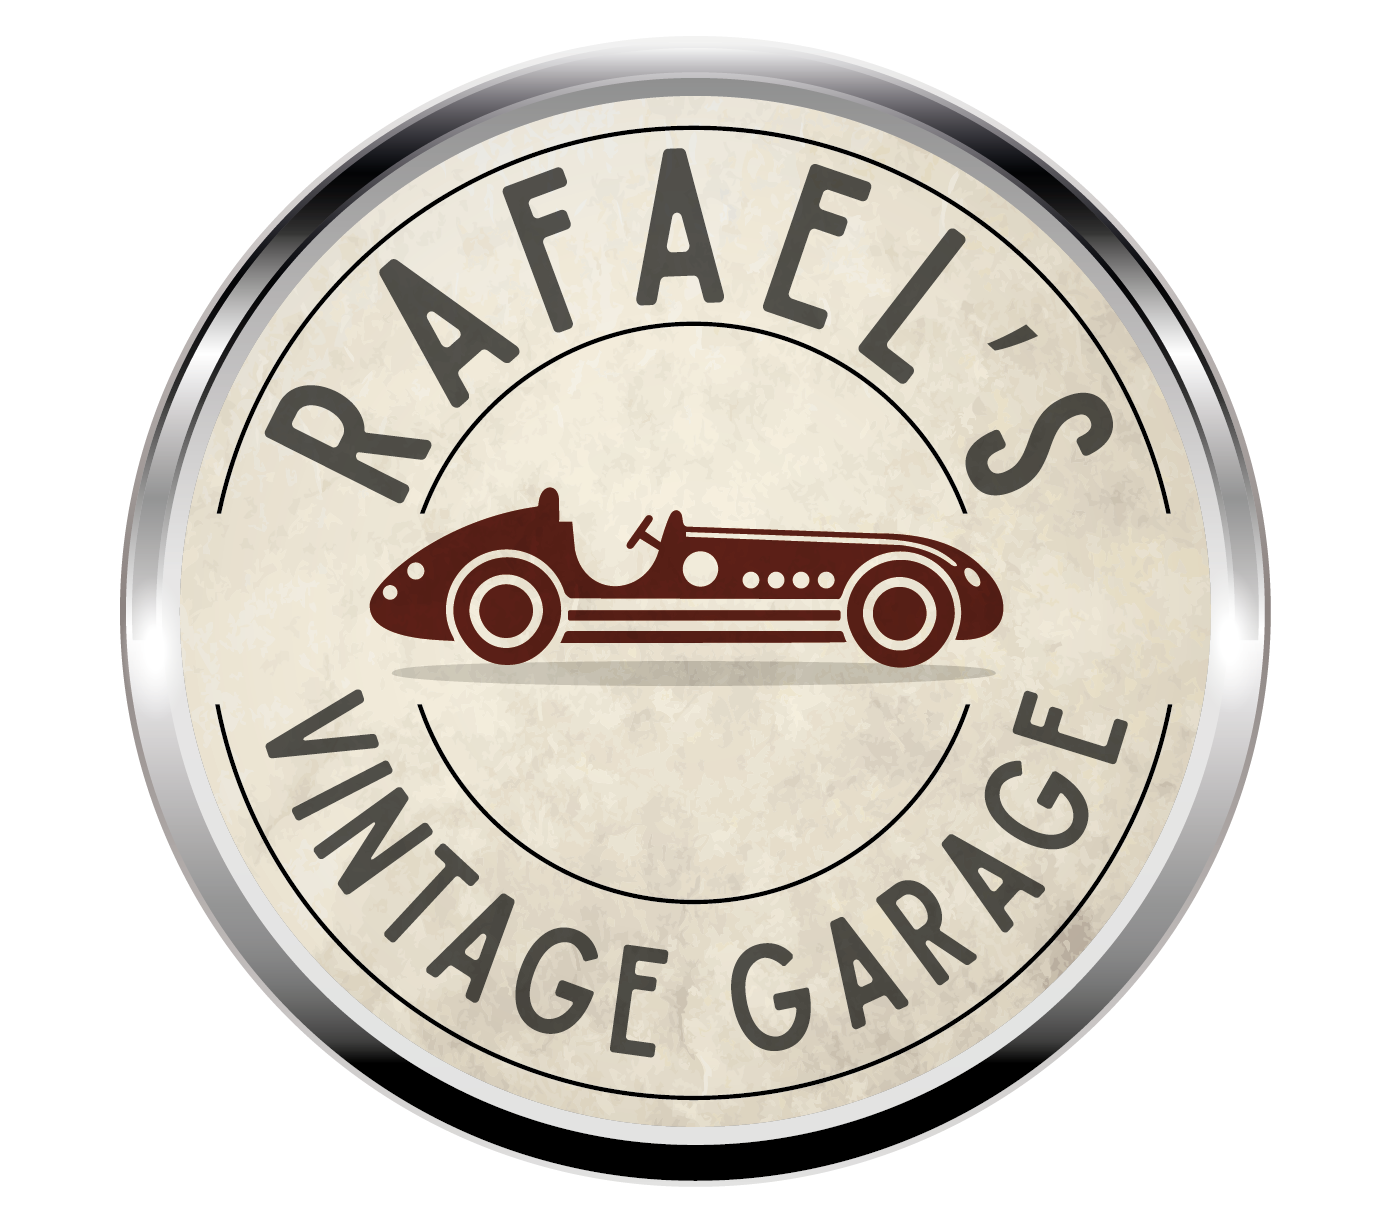 Rafael’s Vintage Garage